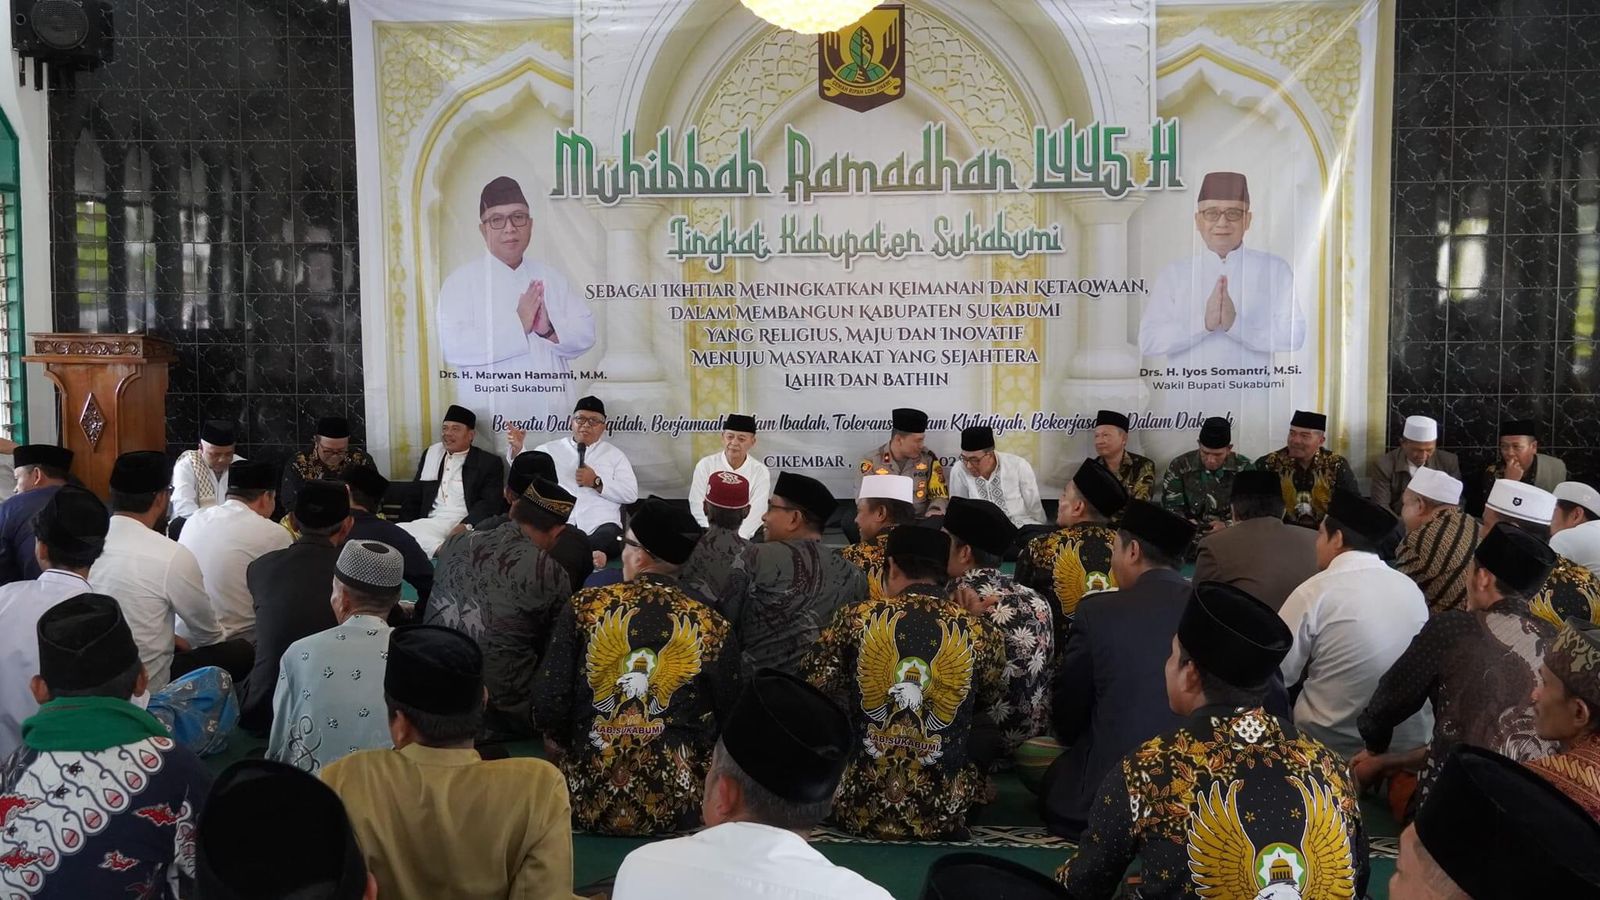 ARAHAN : Bupati Sukabumi, Marwan Hamami, saat memberikan sambutannya pada Muhibah Ramadhan di Masjid Jami Al Mushlihuun di Desa Kertaraharja, Kecamatan Cikembar pada Kamis (21/03).